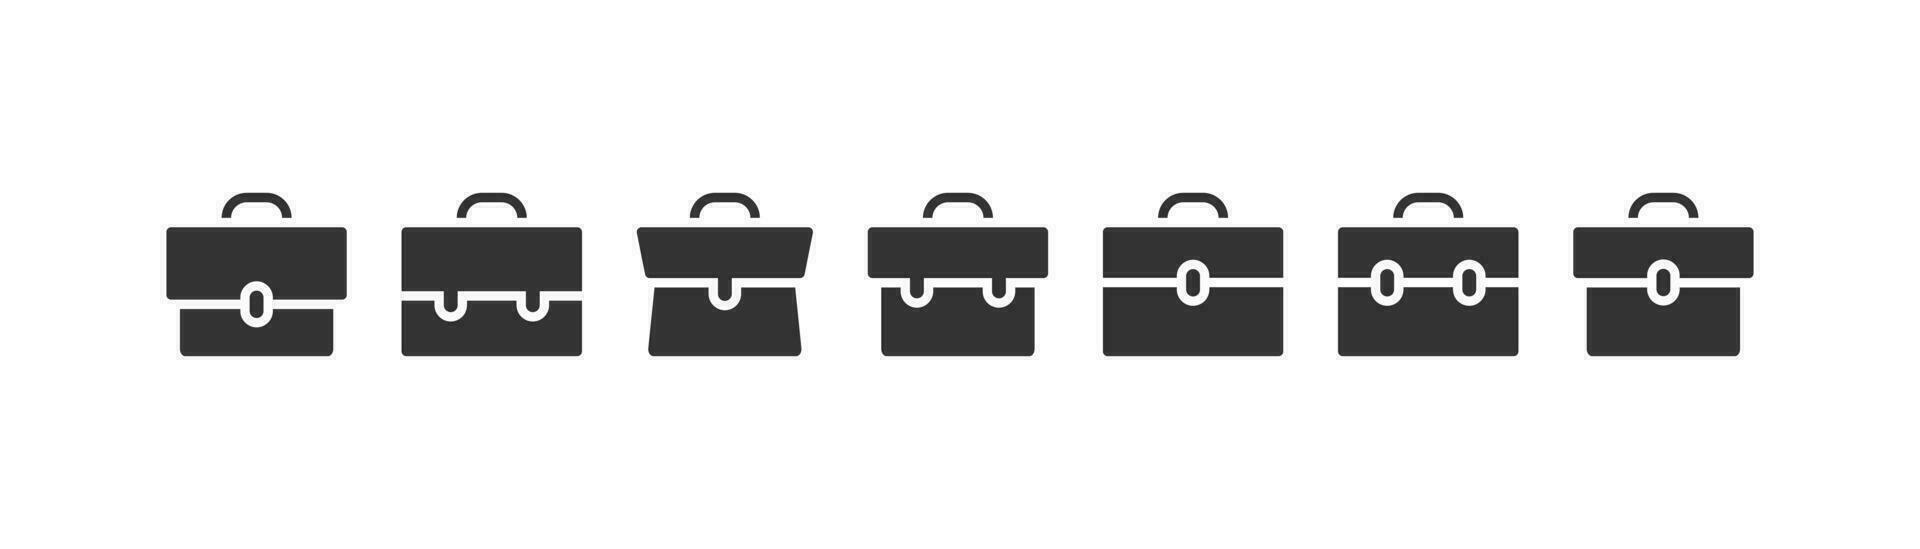 Briefcase icon set. Portfolio vector